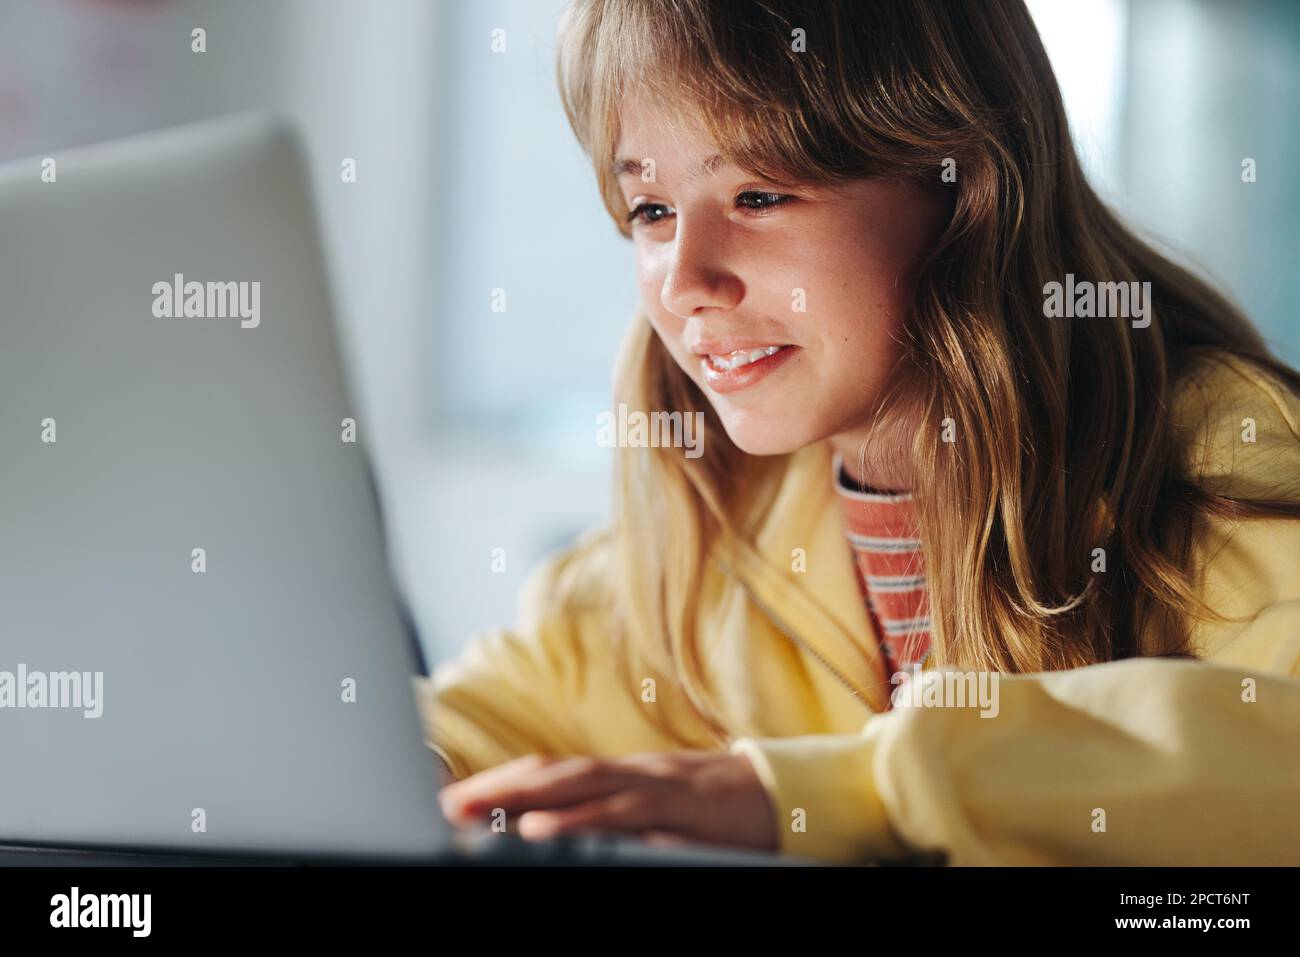 Jeunes étudiantes qui apprennent à programmer avec un ordinateur portable dans une classe. En regardant son écran, elle explore le monde numérique avec sa morue nouvellement acquise Banque D'Images